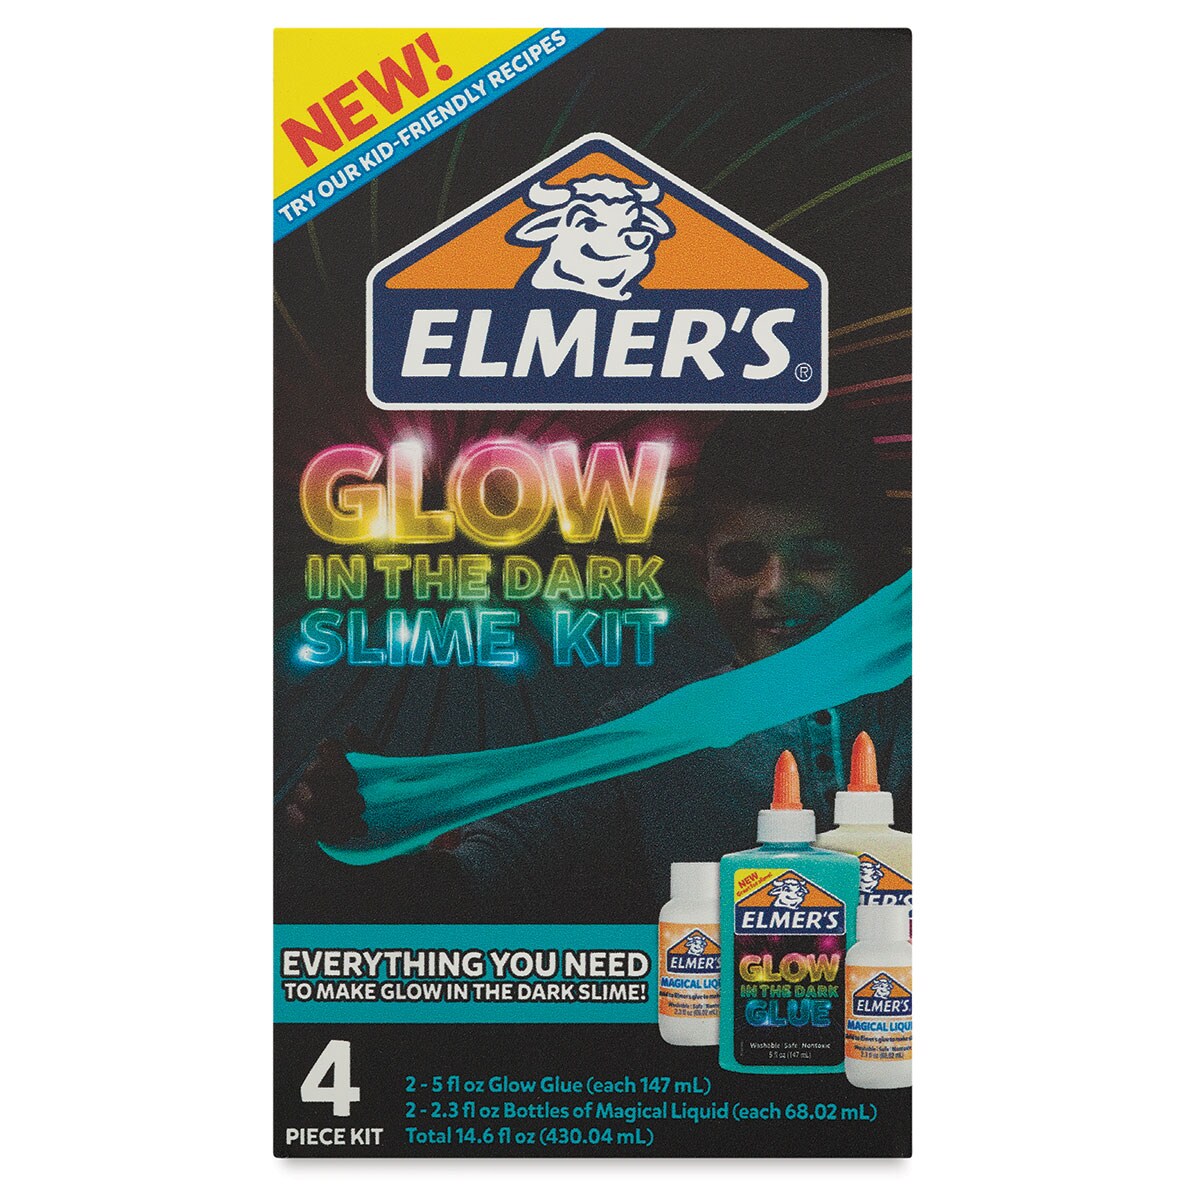 Elmer's Glow in the Dark Slime Kit